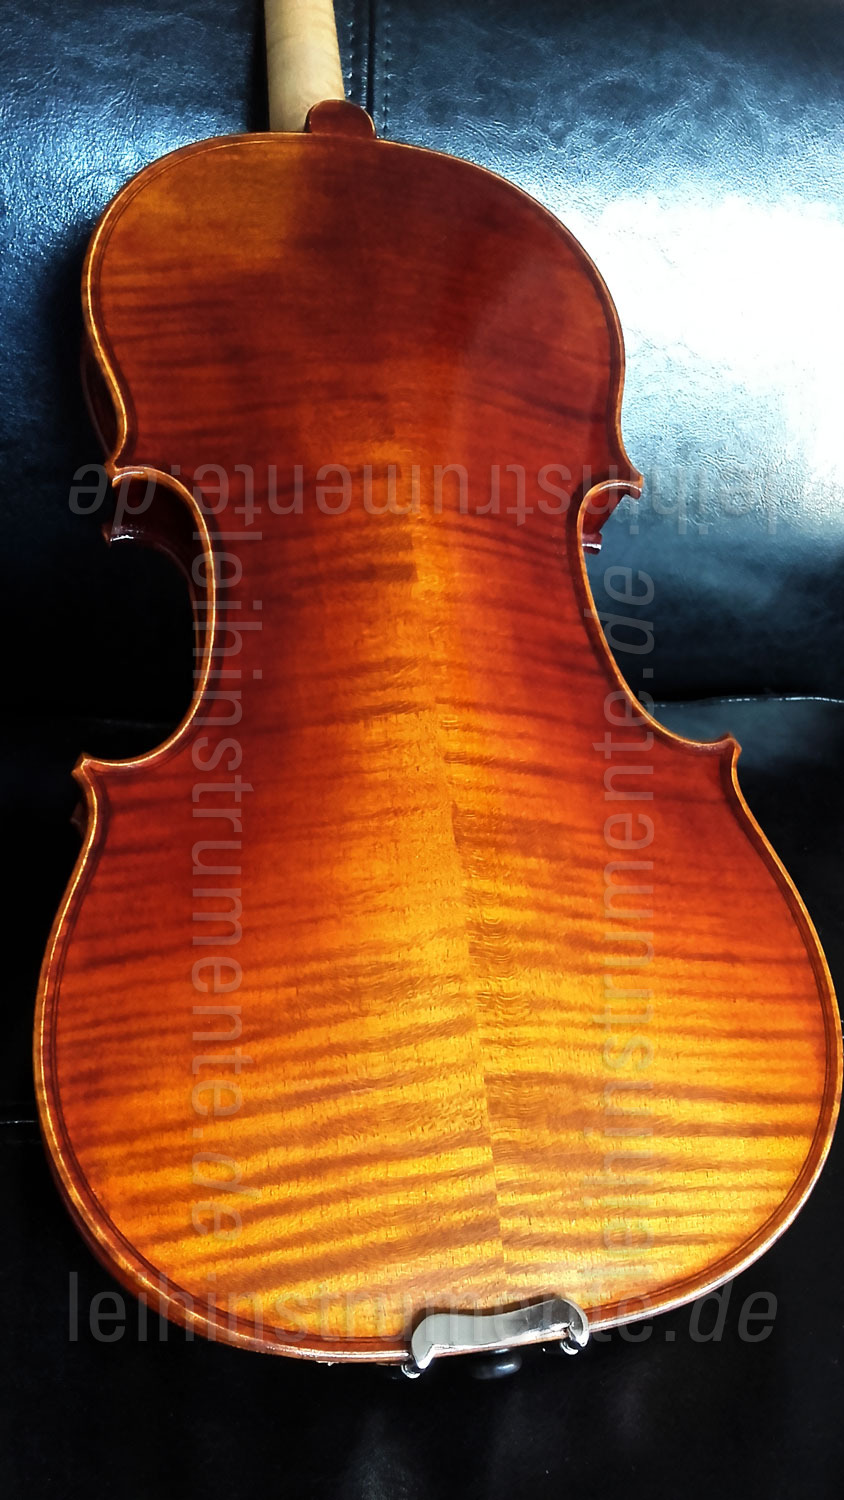 zur Artikelbeschreibung / Preis 4/4 Linkshänder Geige - GASPARINI MODELL ORCHESTRA - Komplettset - vollmassiv + Schulterkissen